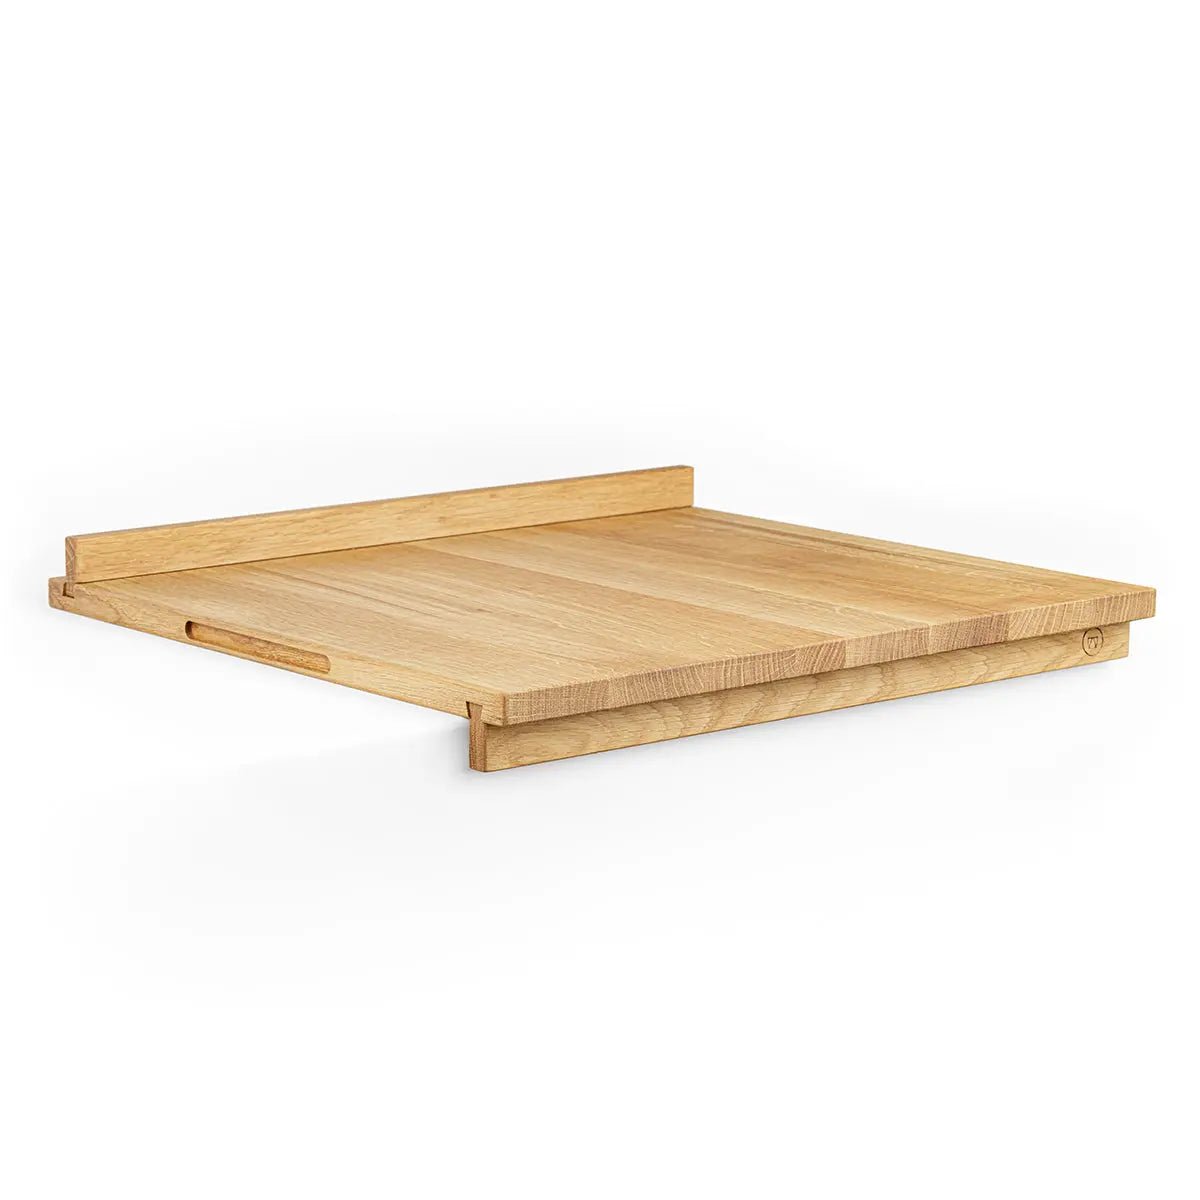 Oak wood baking board »Berta« - chic & stylish 